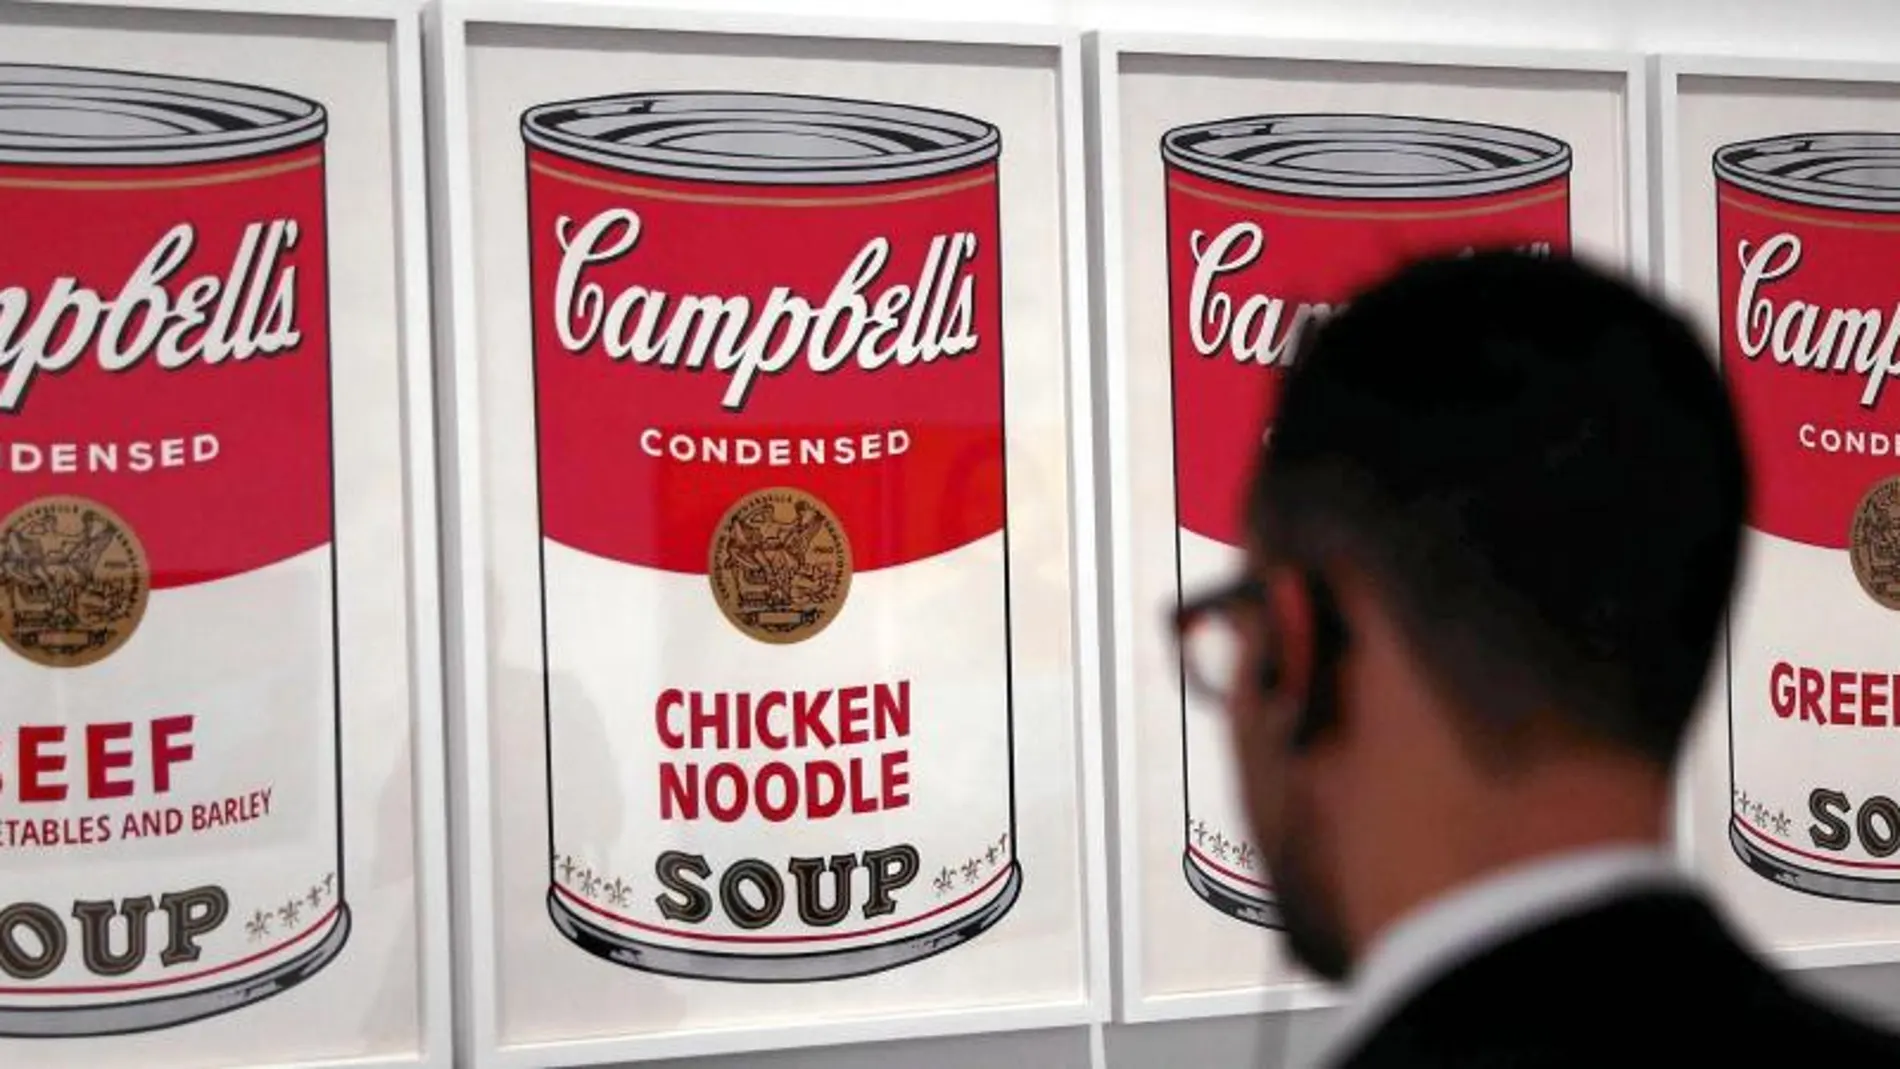 Las muchas variantes de la lata de sopa Campbell’s es una de las estrellas de la exposición que acaba de inaugurarse en Barcelona